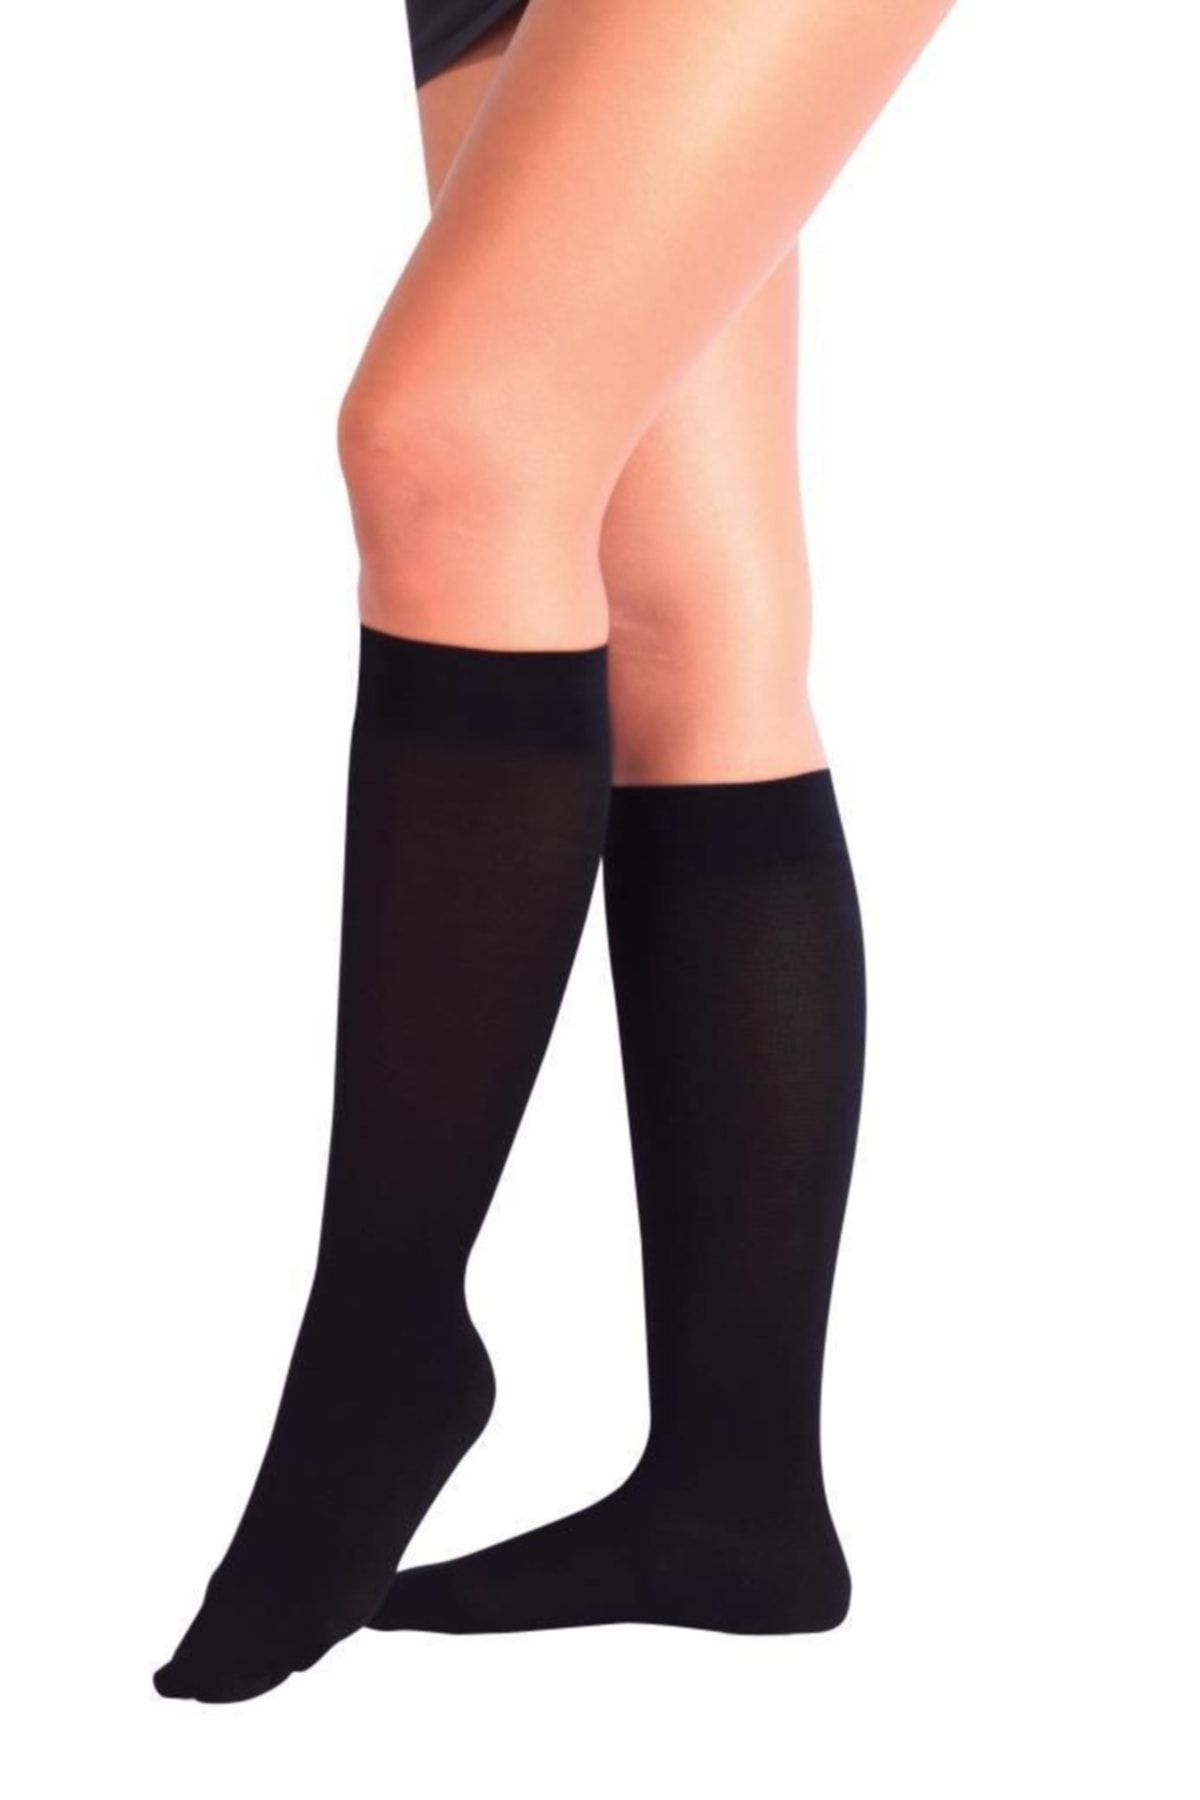 HeiN Varis Çorabı Siyah Renk Çorap Case Burnu Kapalı Orta Basınç Ccl 2 By Sungur Medikal